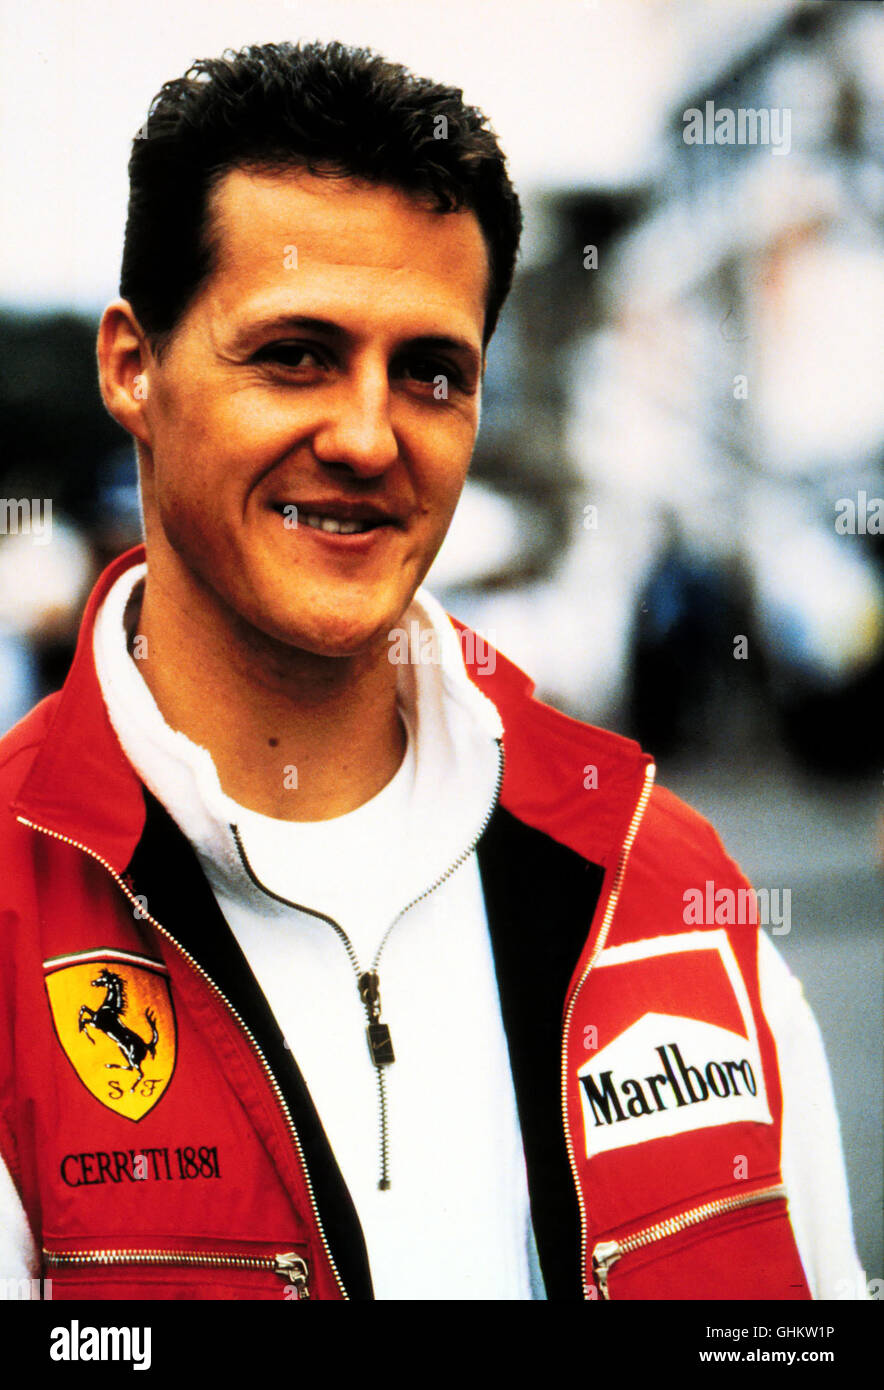 Sterben Sie Spielshow Fur Die Ganze Familie Heute Mit Dabei Michael Schumacher Stockfotografie Alamy